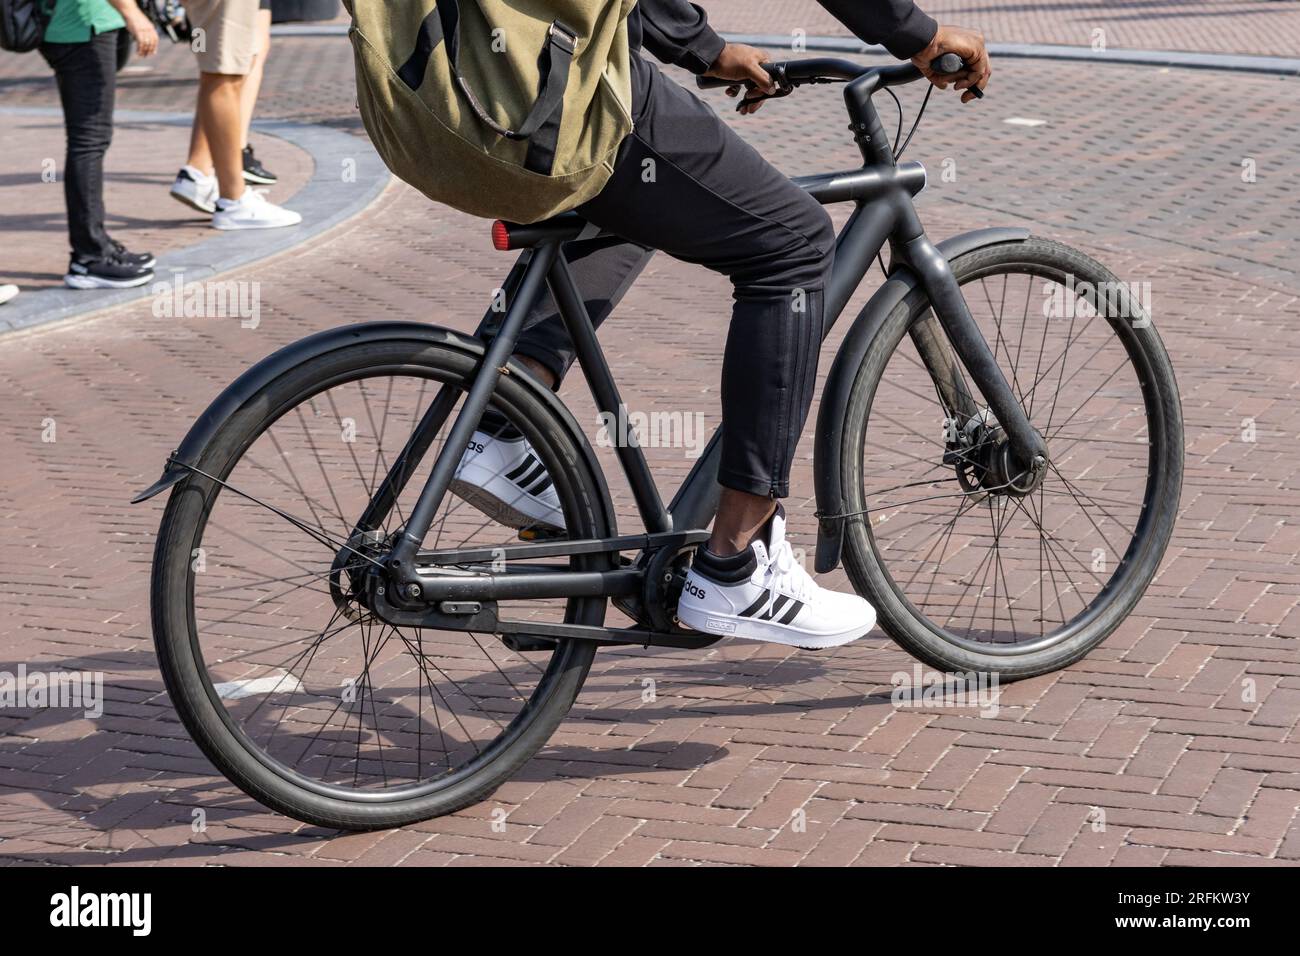 Amsterdam, Nordholland Niederlande - 07 18 2023: E-Bike vom insolventen Hersteller Vanmoof auf den Straßen von amsterdam Stockfoto